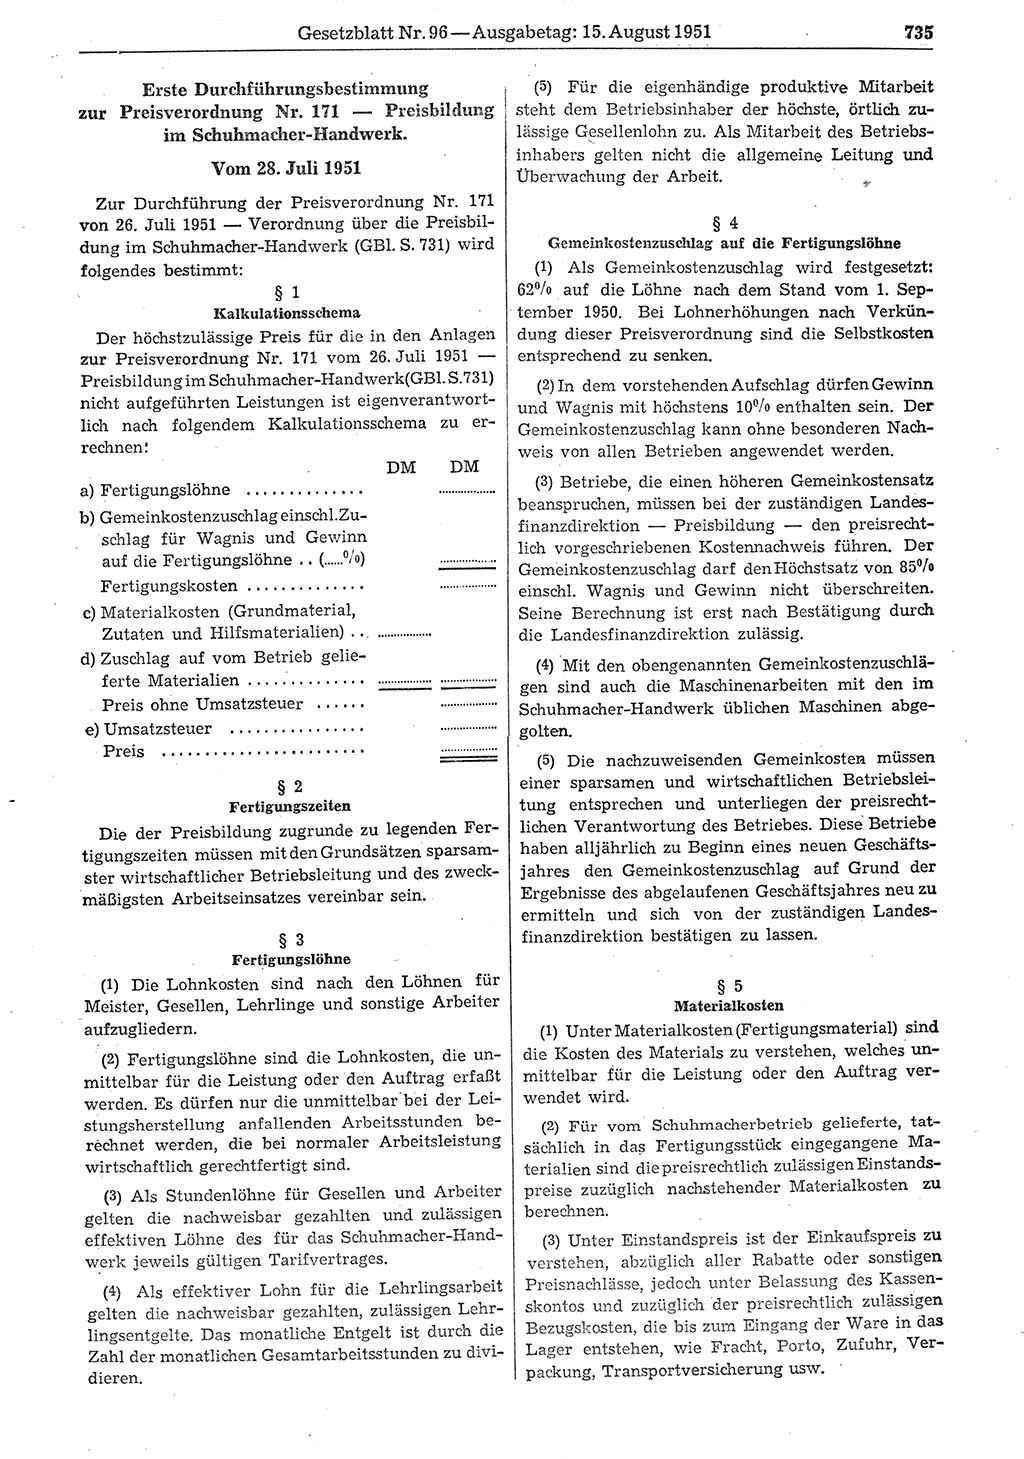 Gesetzblatt (GBl.) der Deutschen Demokratischen Republik (DDR) 1951, Seite 735 (GBl. DDR 1951, S. 735)